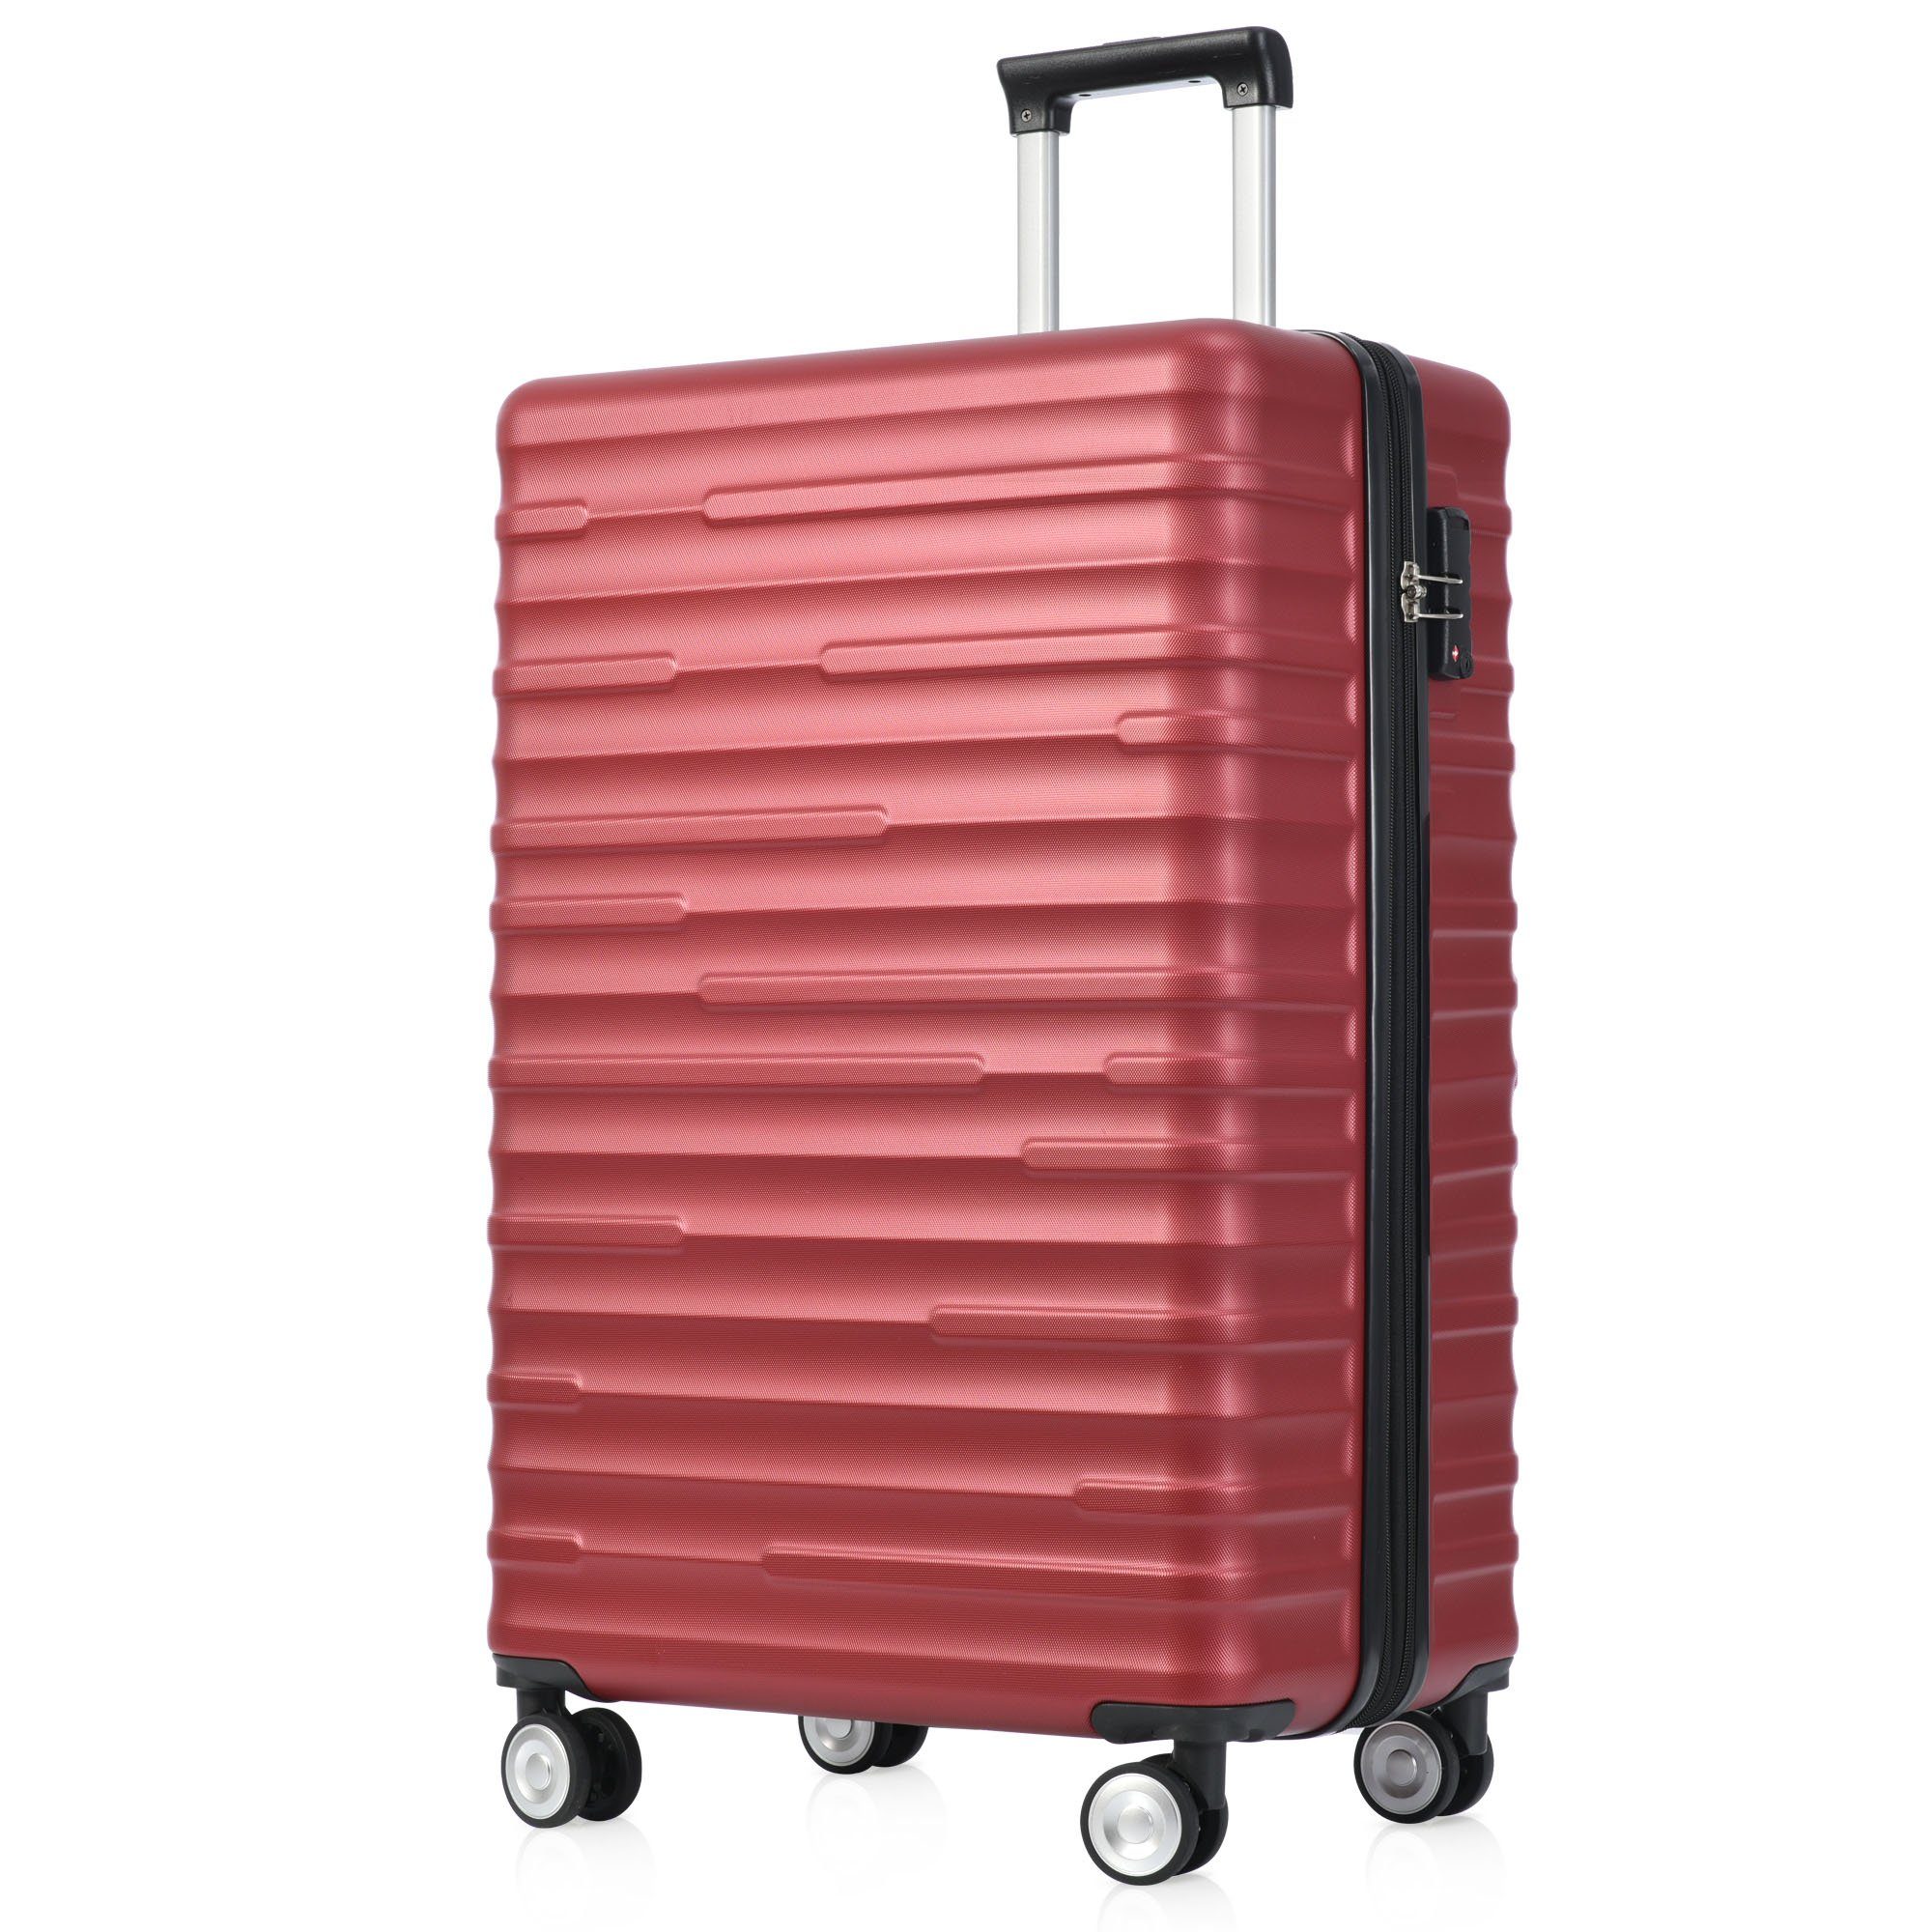 Räder, zuverlässiger ABS-Gepäck, Handgepäckkoffer Design, REDOM 4 Rot Hochwertiges Reisebegleiter, stilvoll TSA-Schloss, asserdichtes